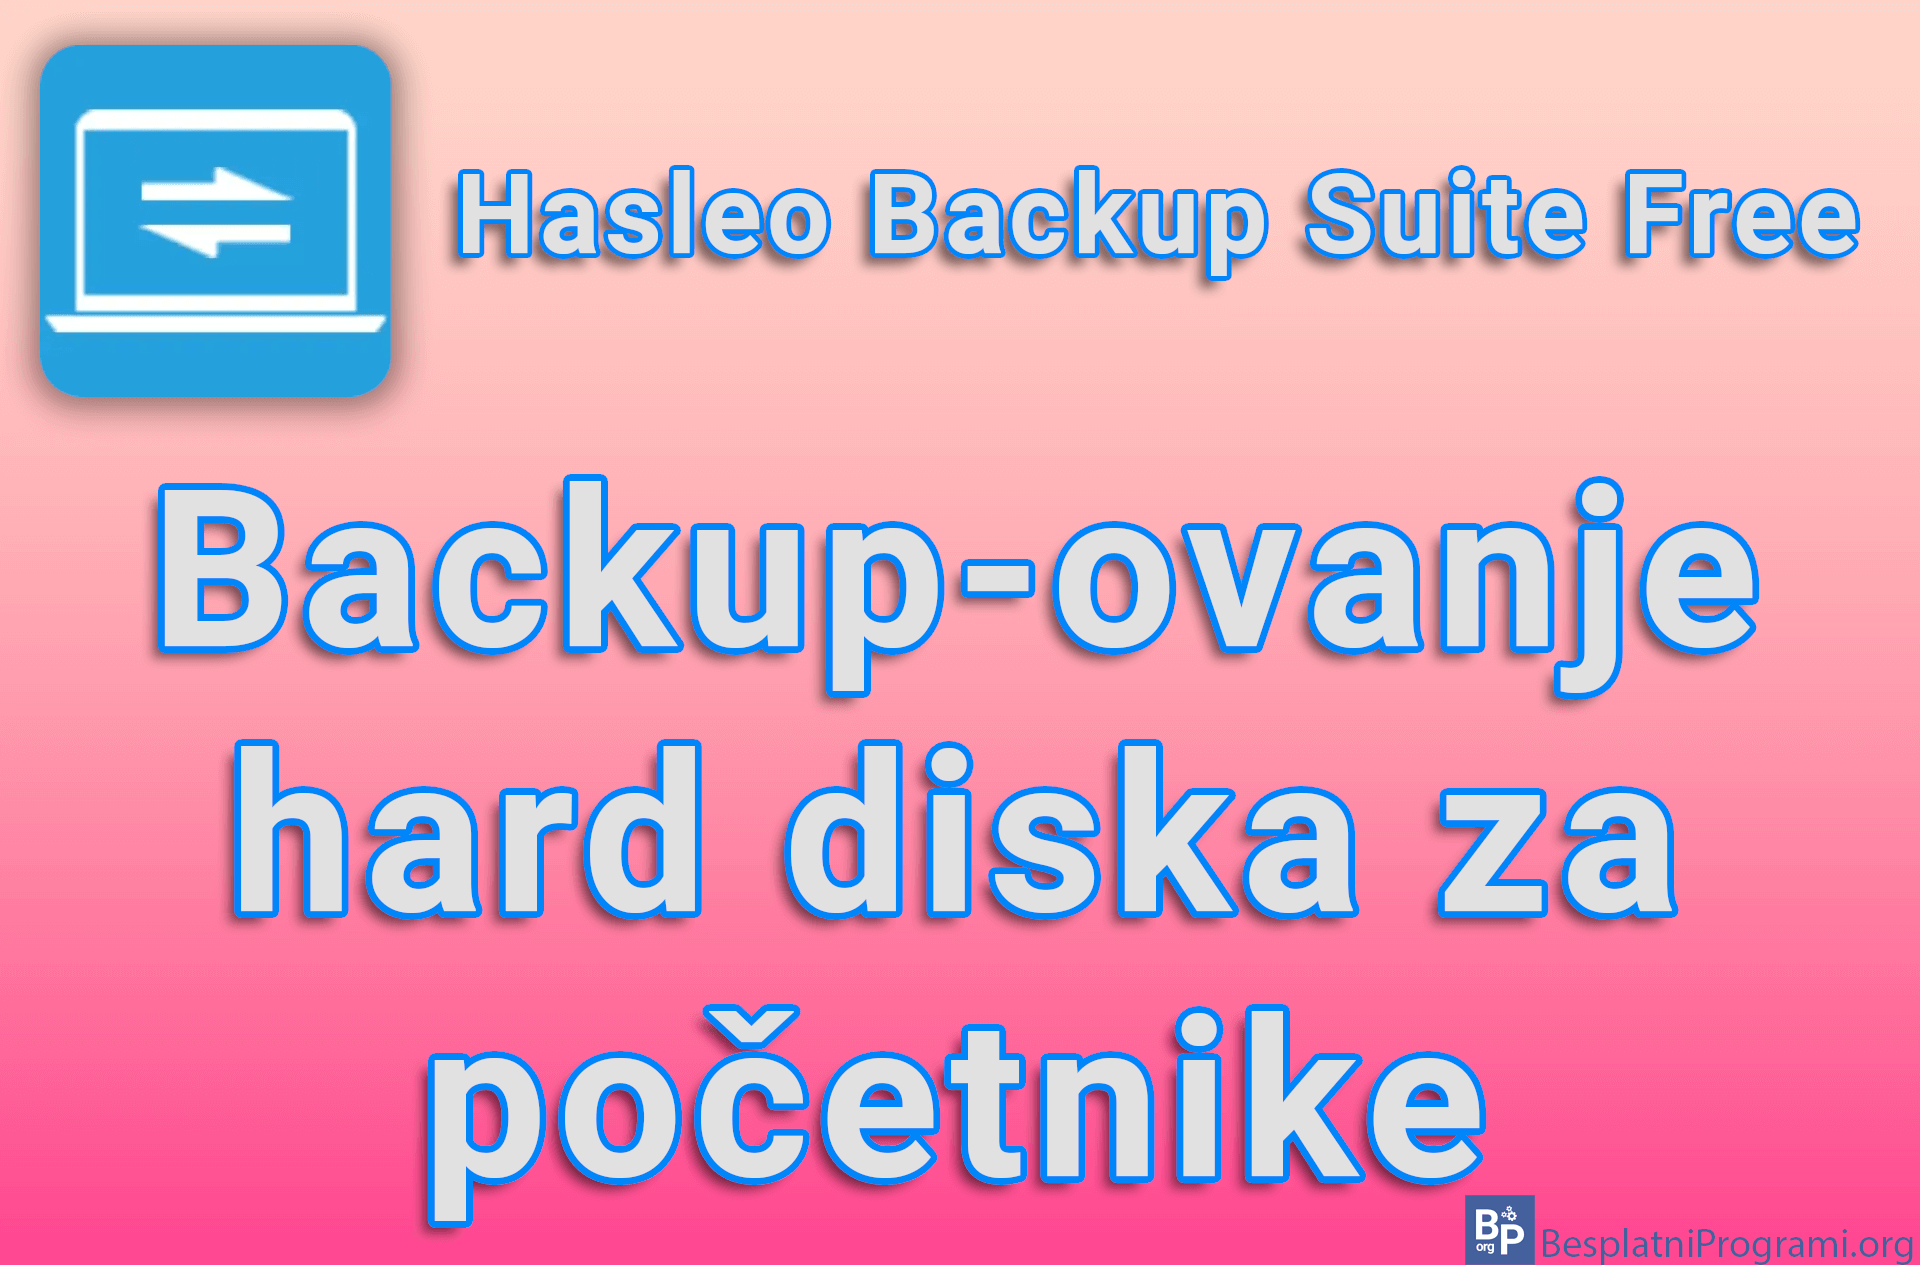 Hasleo Backup Suite Free - Backup-ovanje hard diska za početnike